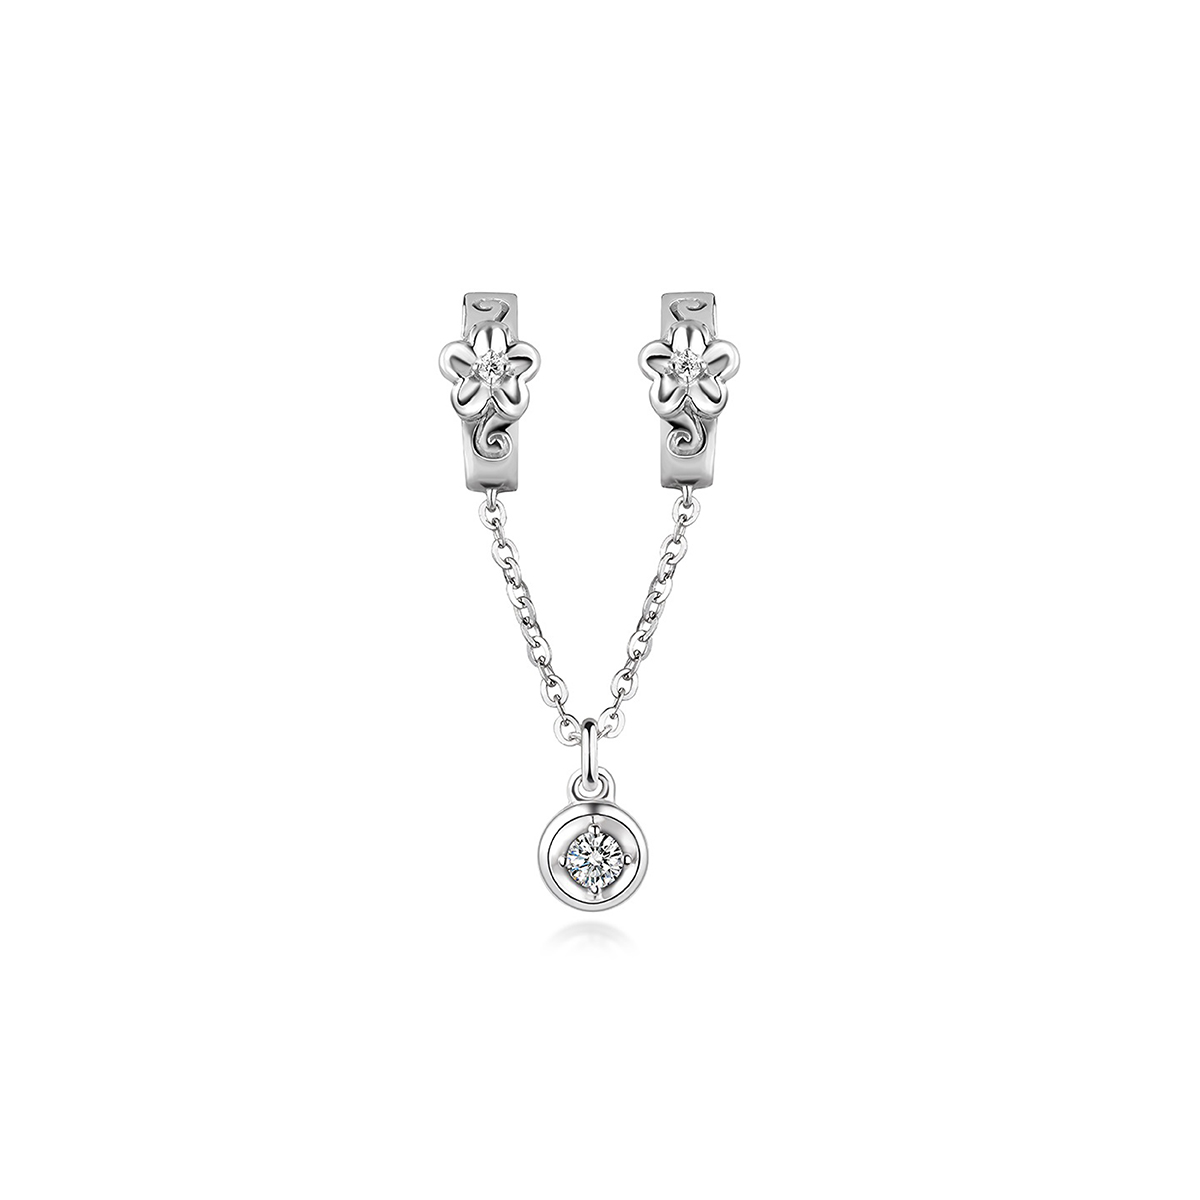 六福珠寶18K金串飾 - "浮雕花"18K金(白色)鑽石串飾